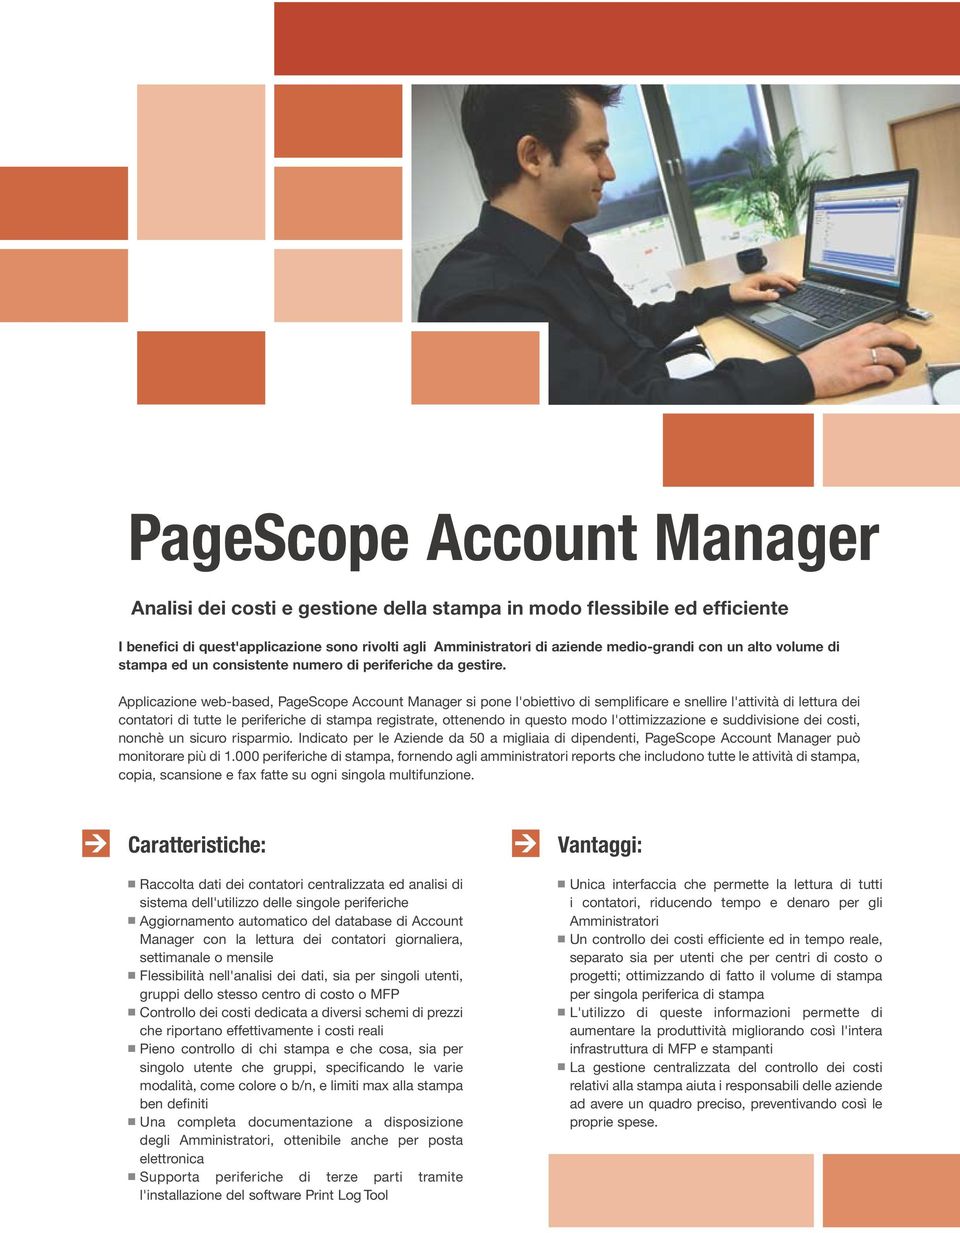 Applicazione web-based, PageScope Account si pone l'obiettivo di semplificare e snellire l'attività di lettura dei contatori di tutte le periferiche di stampa registrate, ottenendo in questo modo